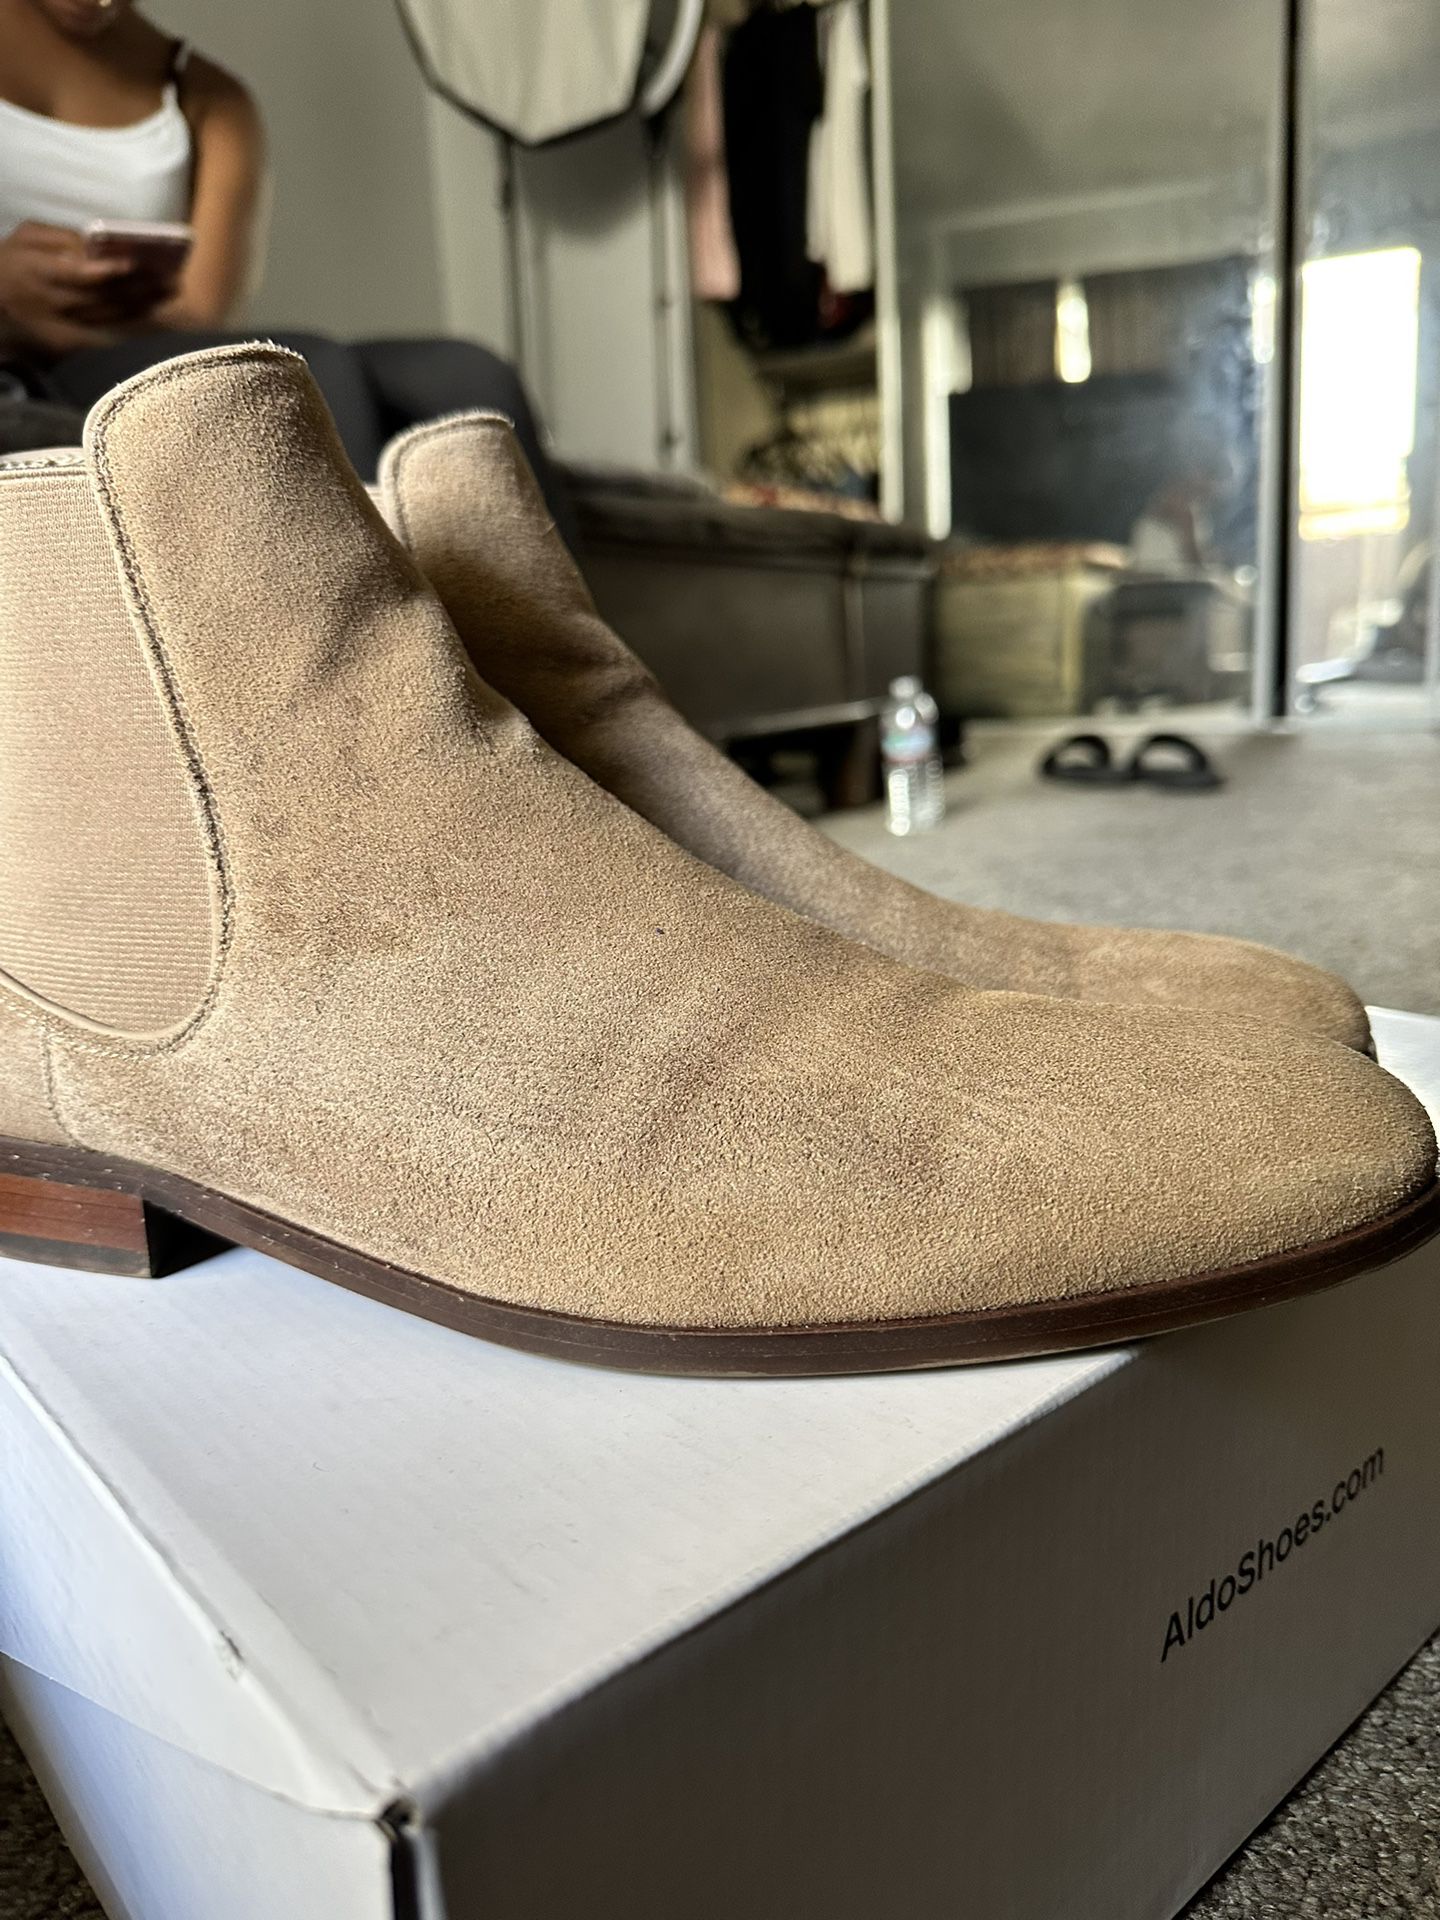 Aldo shoes/boots